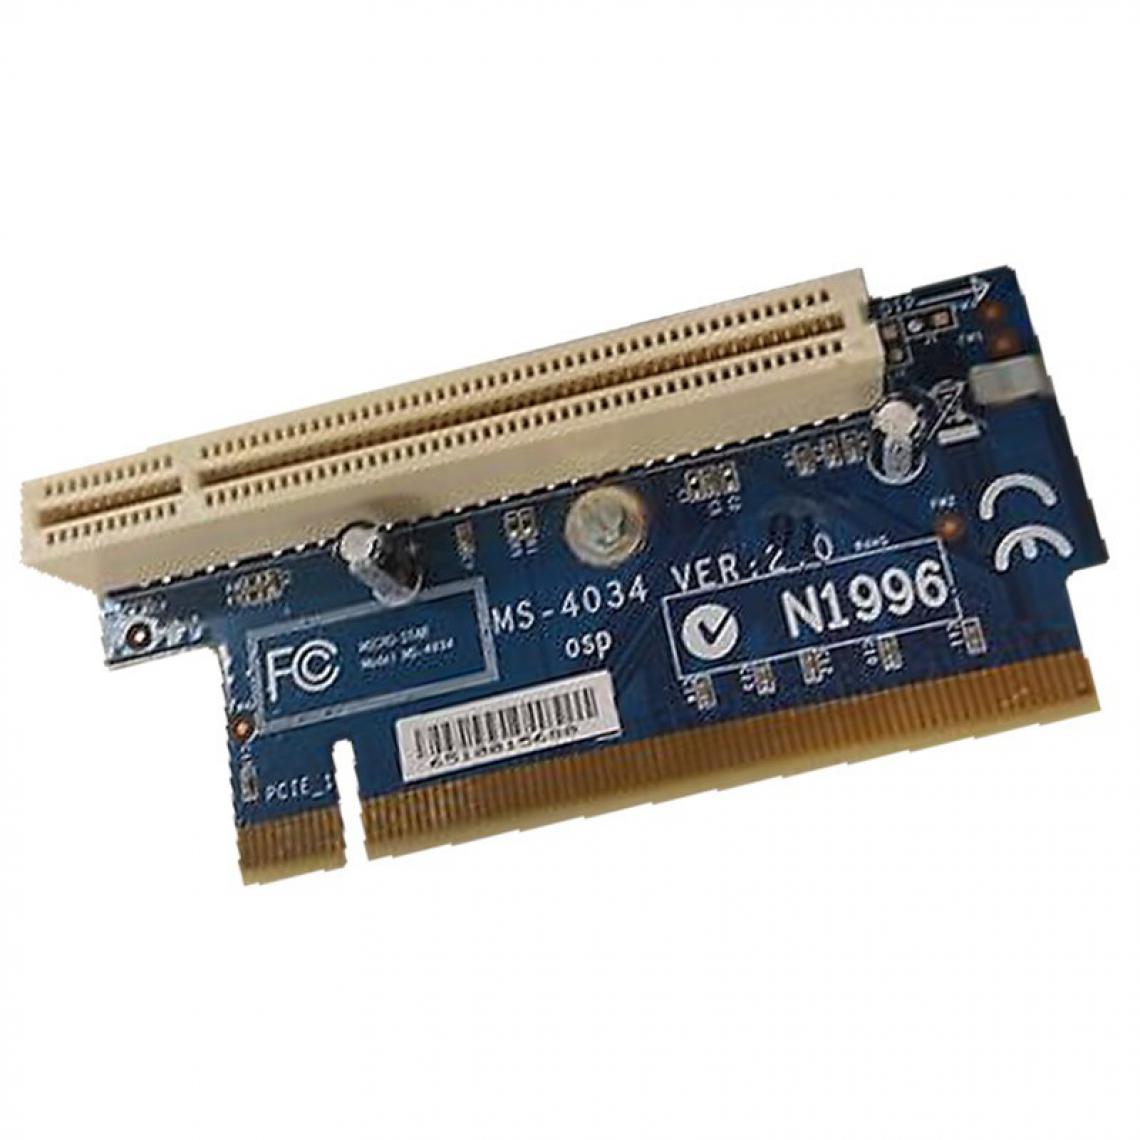 Ibm - Carte PCI IBM Riser Card Micro Star MS-4034 VER:1.0 PCI IBM Lenovo ThinkCentre - Carte Contrôleur USB